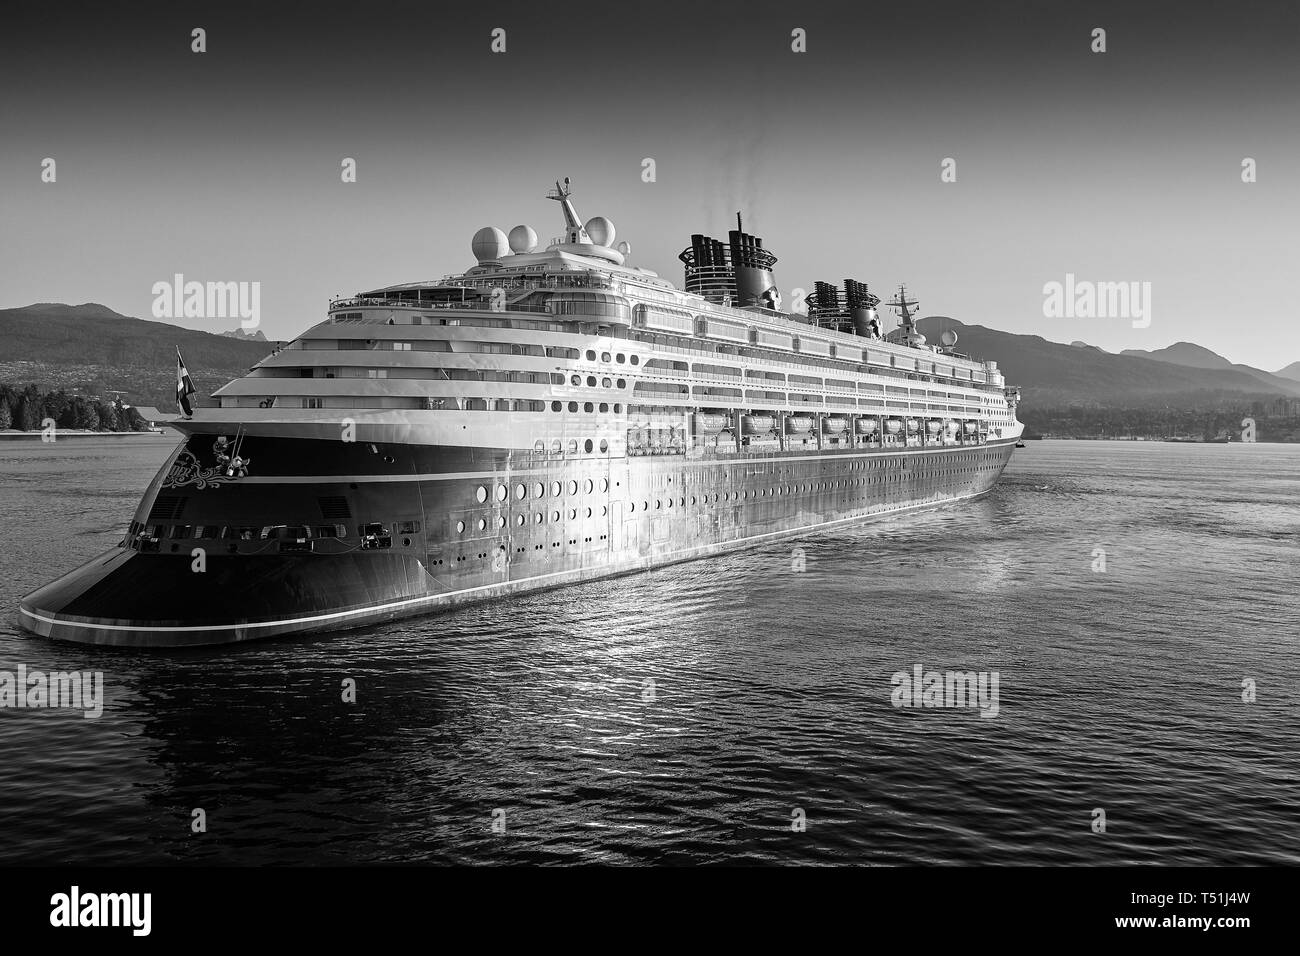 Moody photo en noir et blanc du géant Disney Cruise Ship, Disney Wonder, arrivant dans le port de Vancouver au lever du soleil. Colombie-Britannique, Canada. Banque D'Images